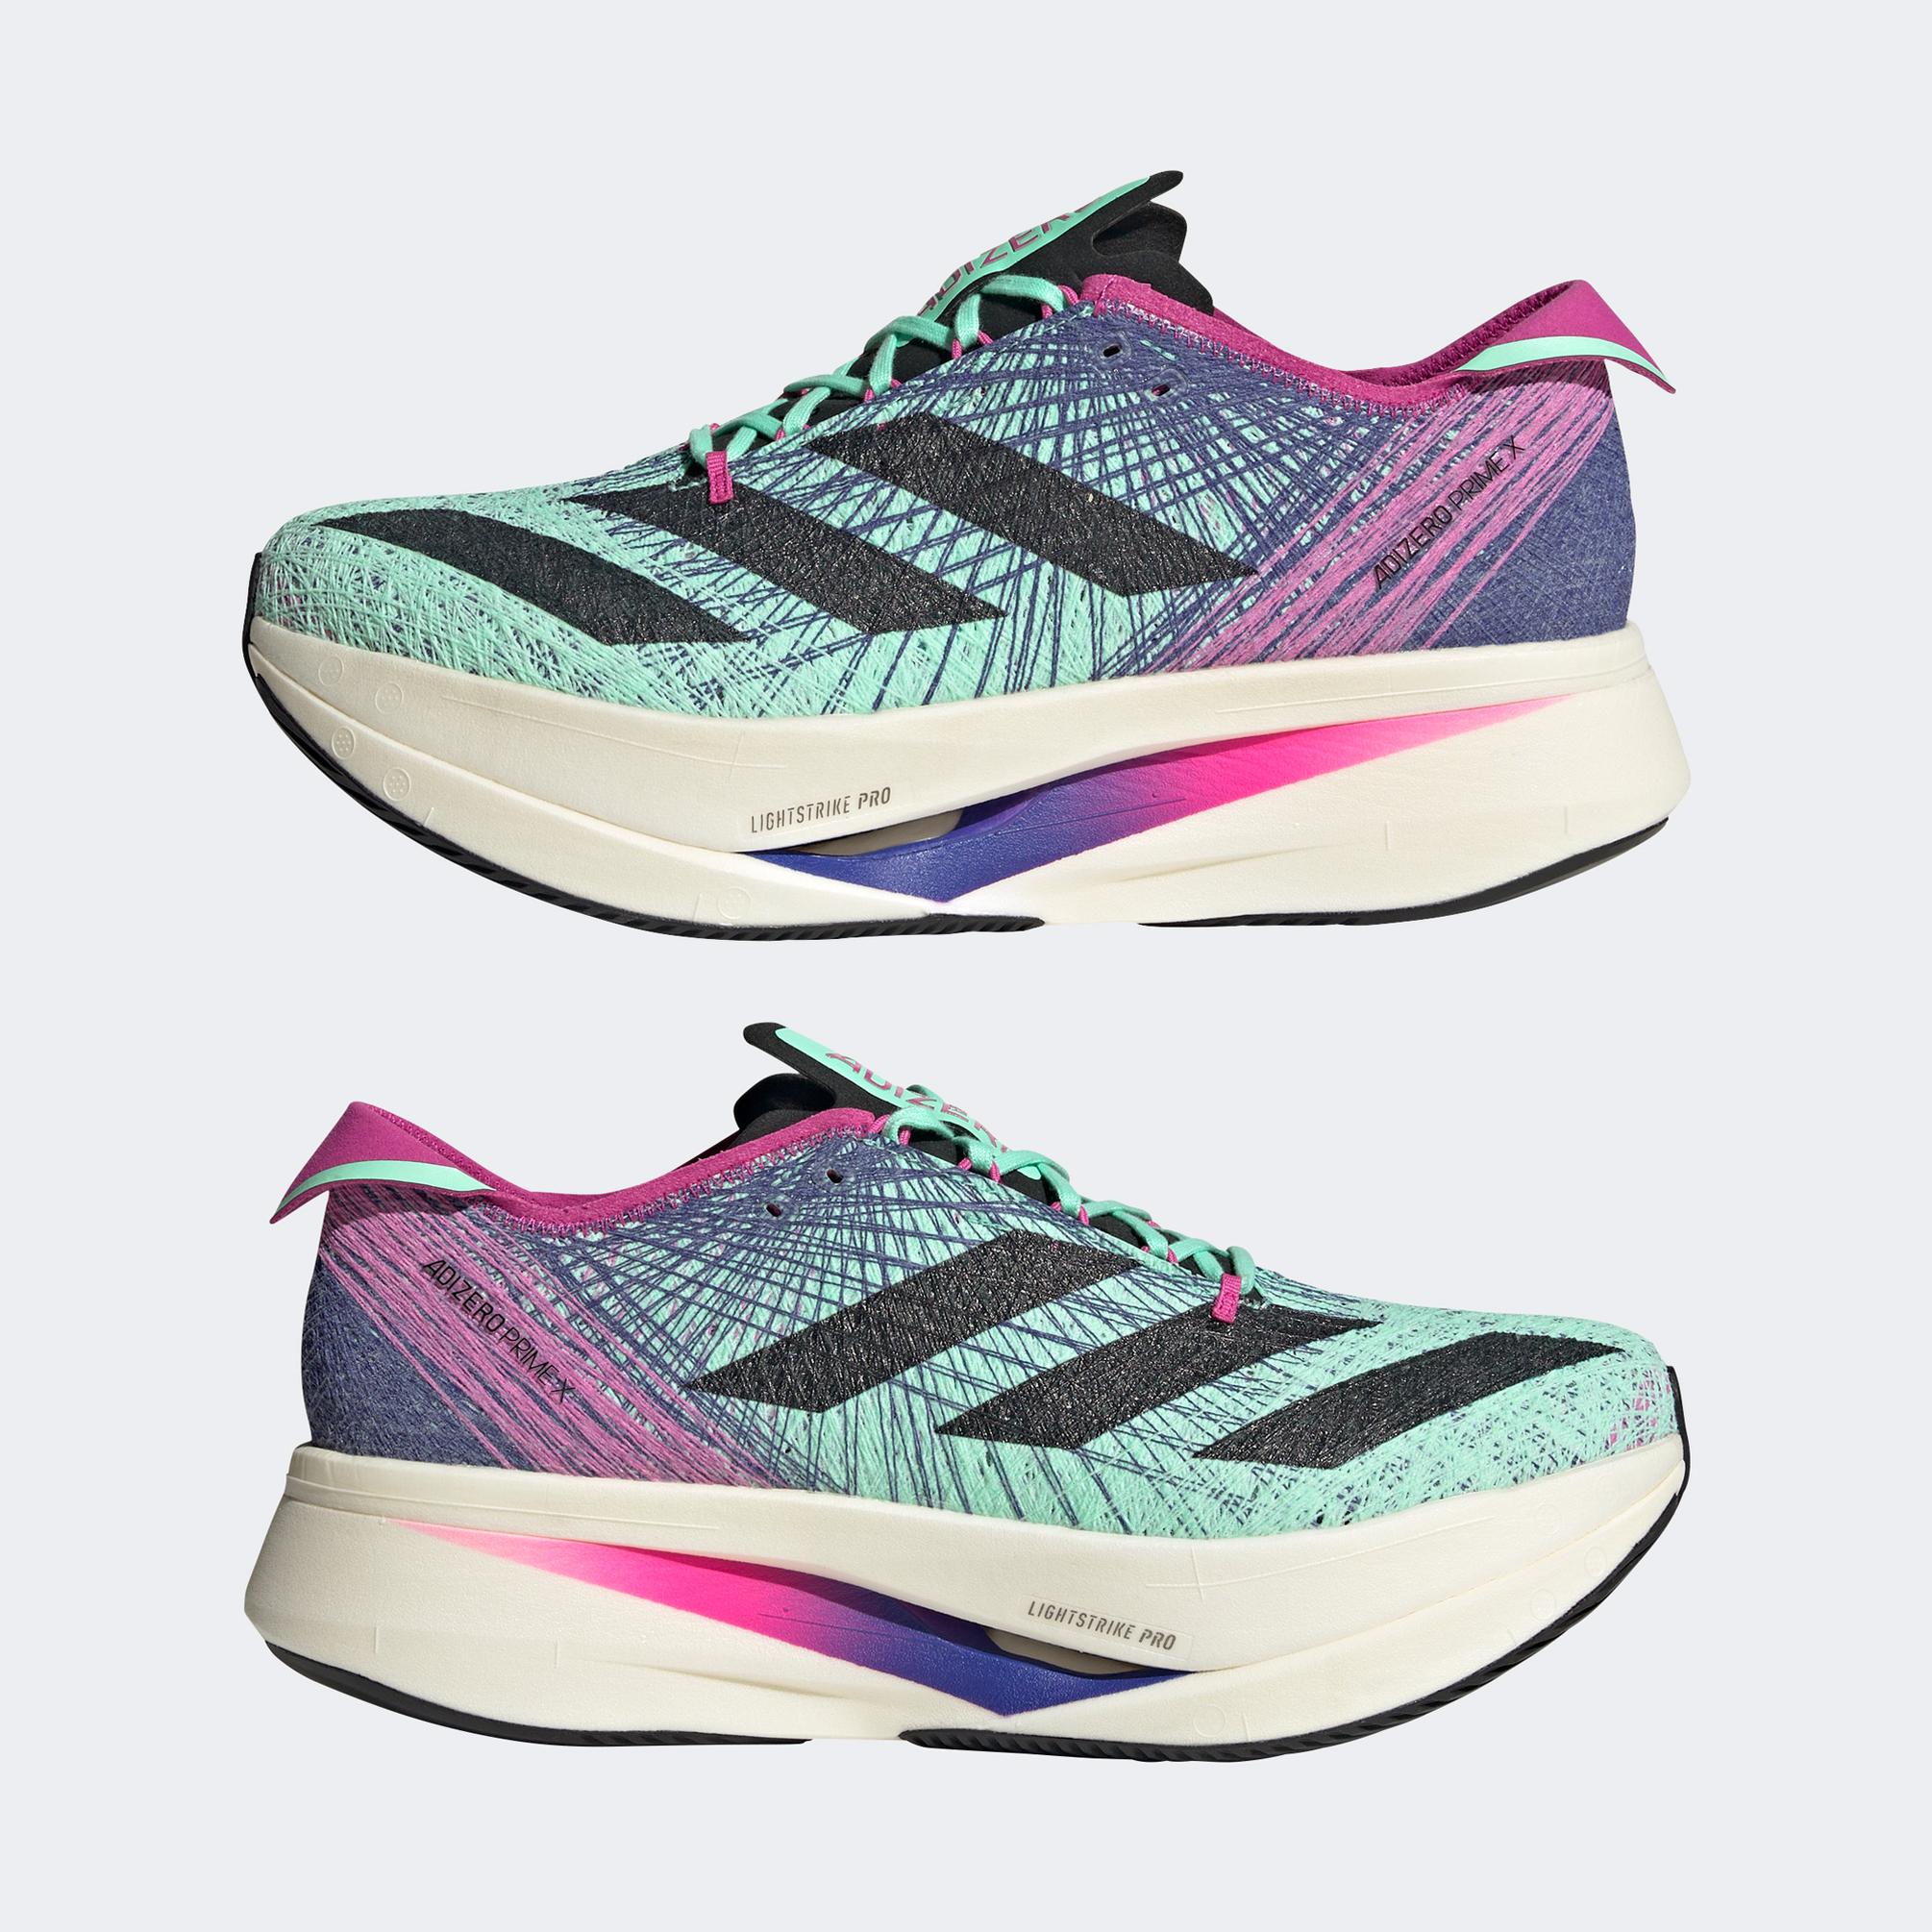  adidas Adizero Prime x Strung Kadın Yeşil Spor Ayakkabı